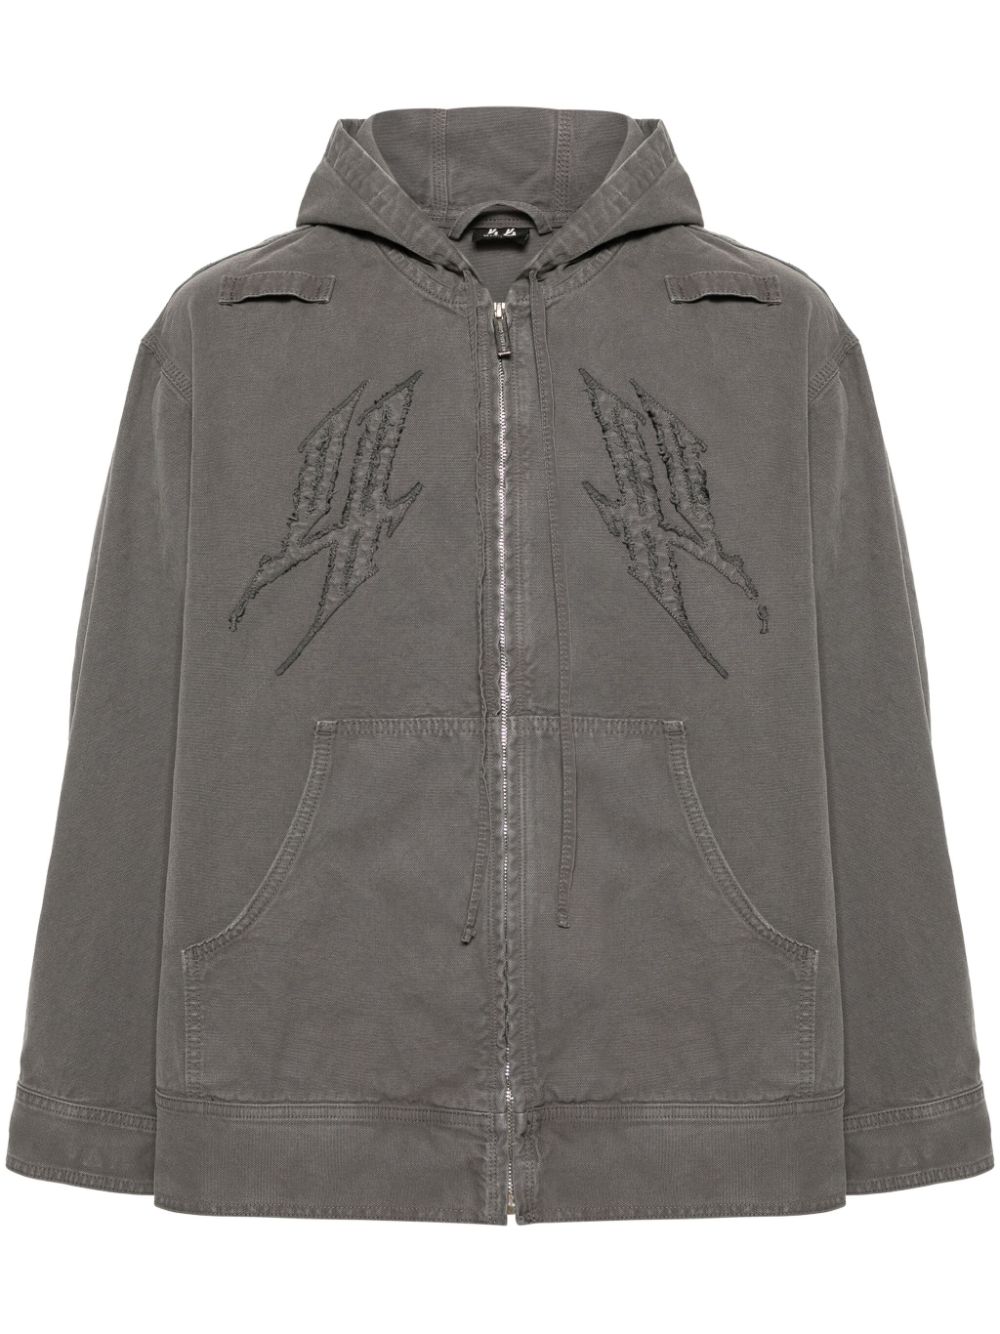 44 LABEL GROUP Fraktur cotton hooded jacket - Grey von 44 LABEL GROUP